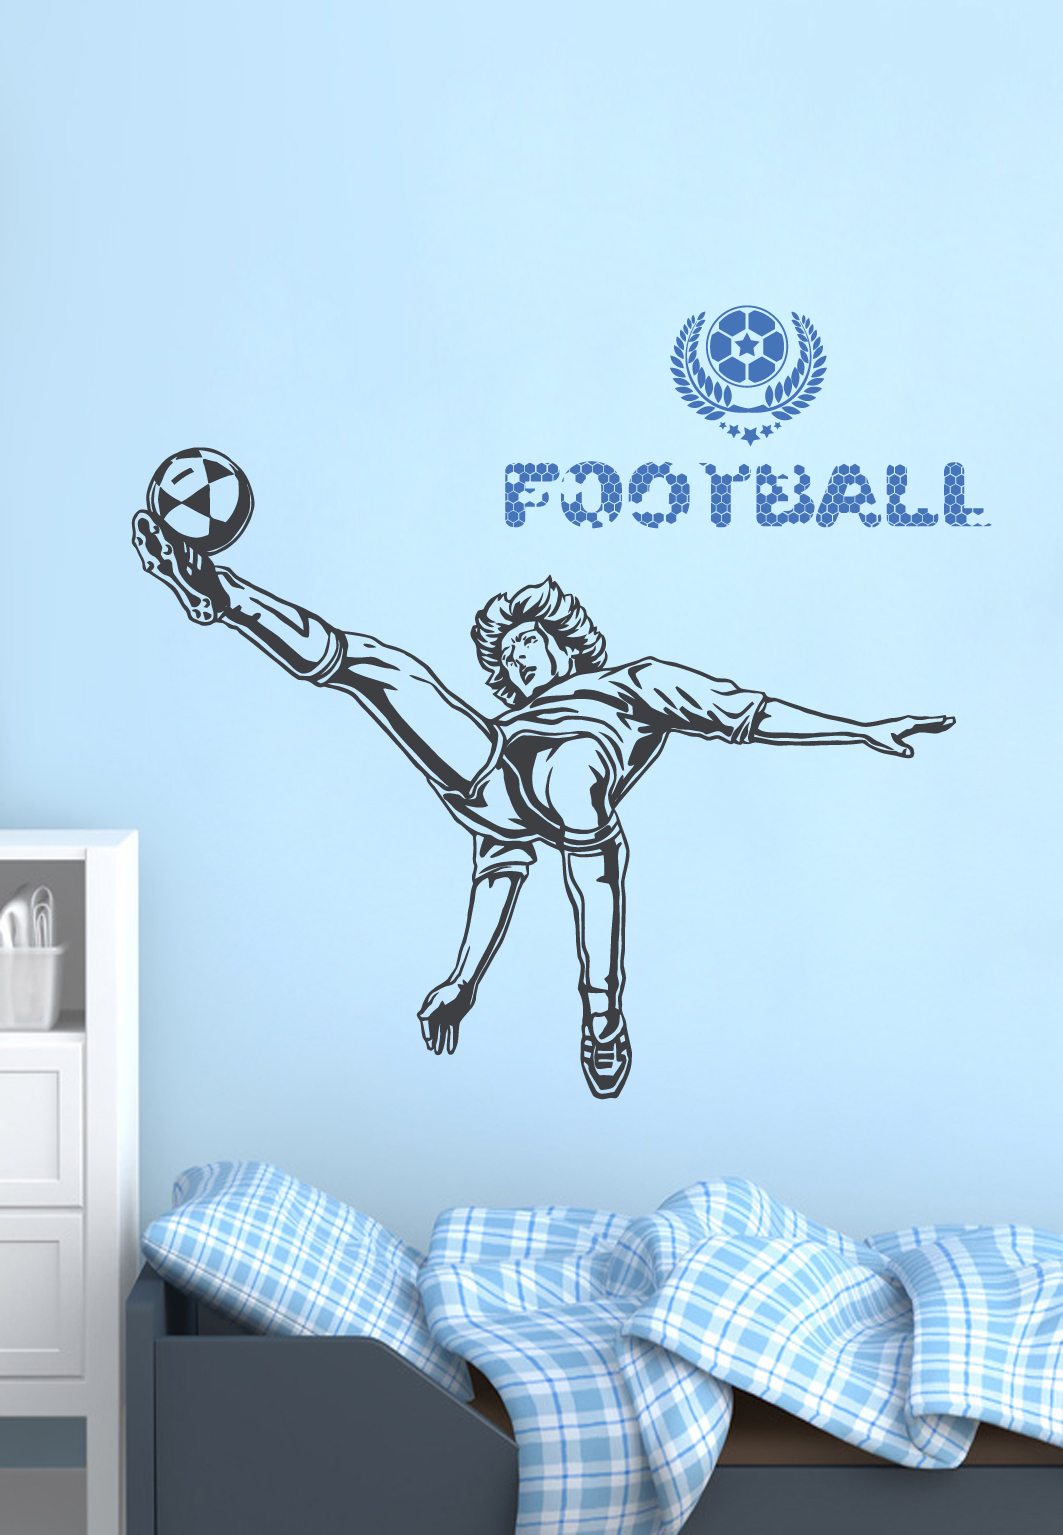 מדבקת קיר - שחקן כדורגל בעצירת כדור בהנפת רגל - כולל טקסט וסמל